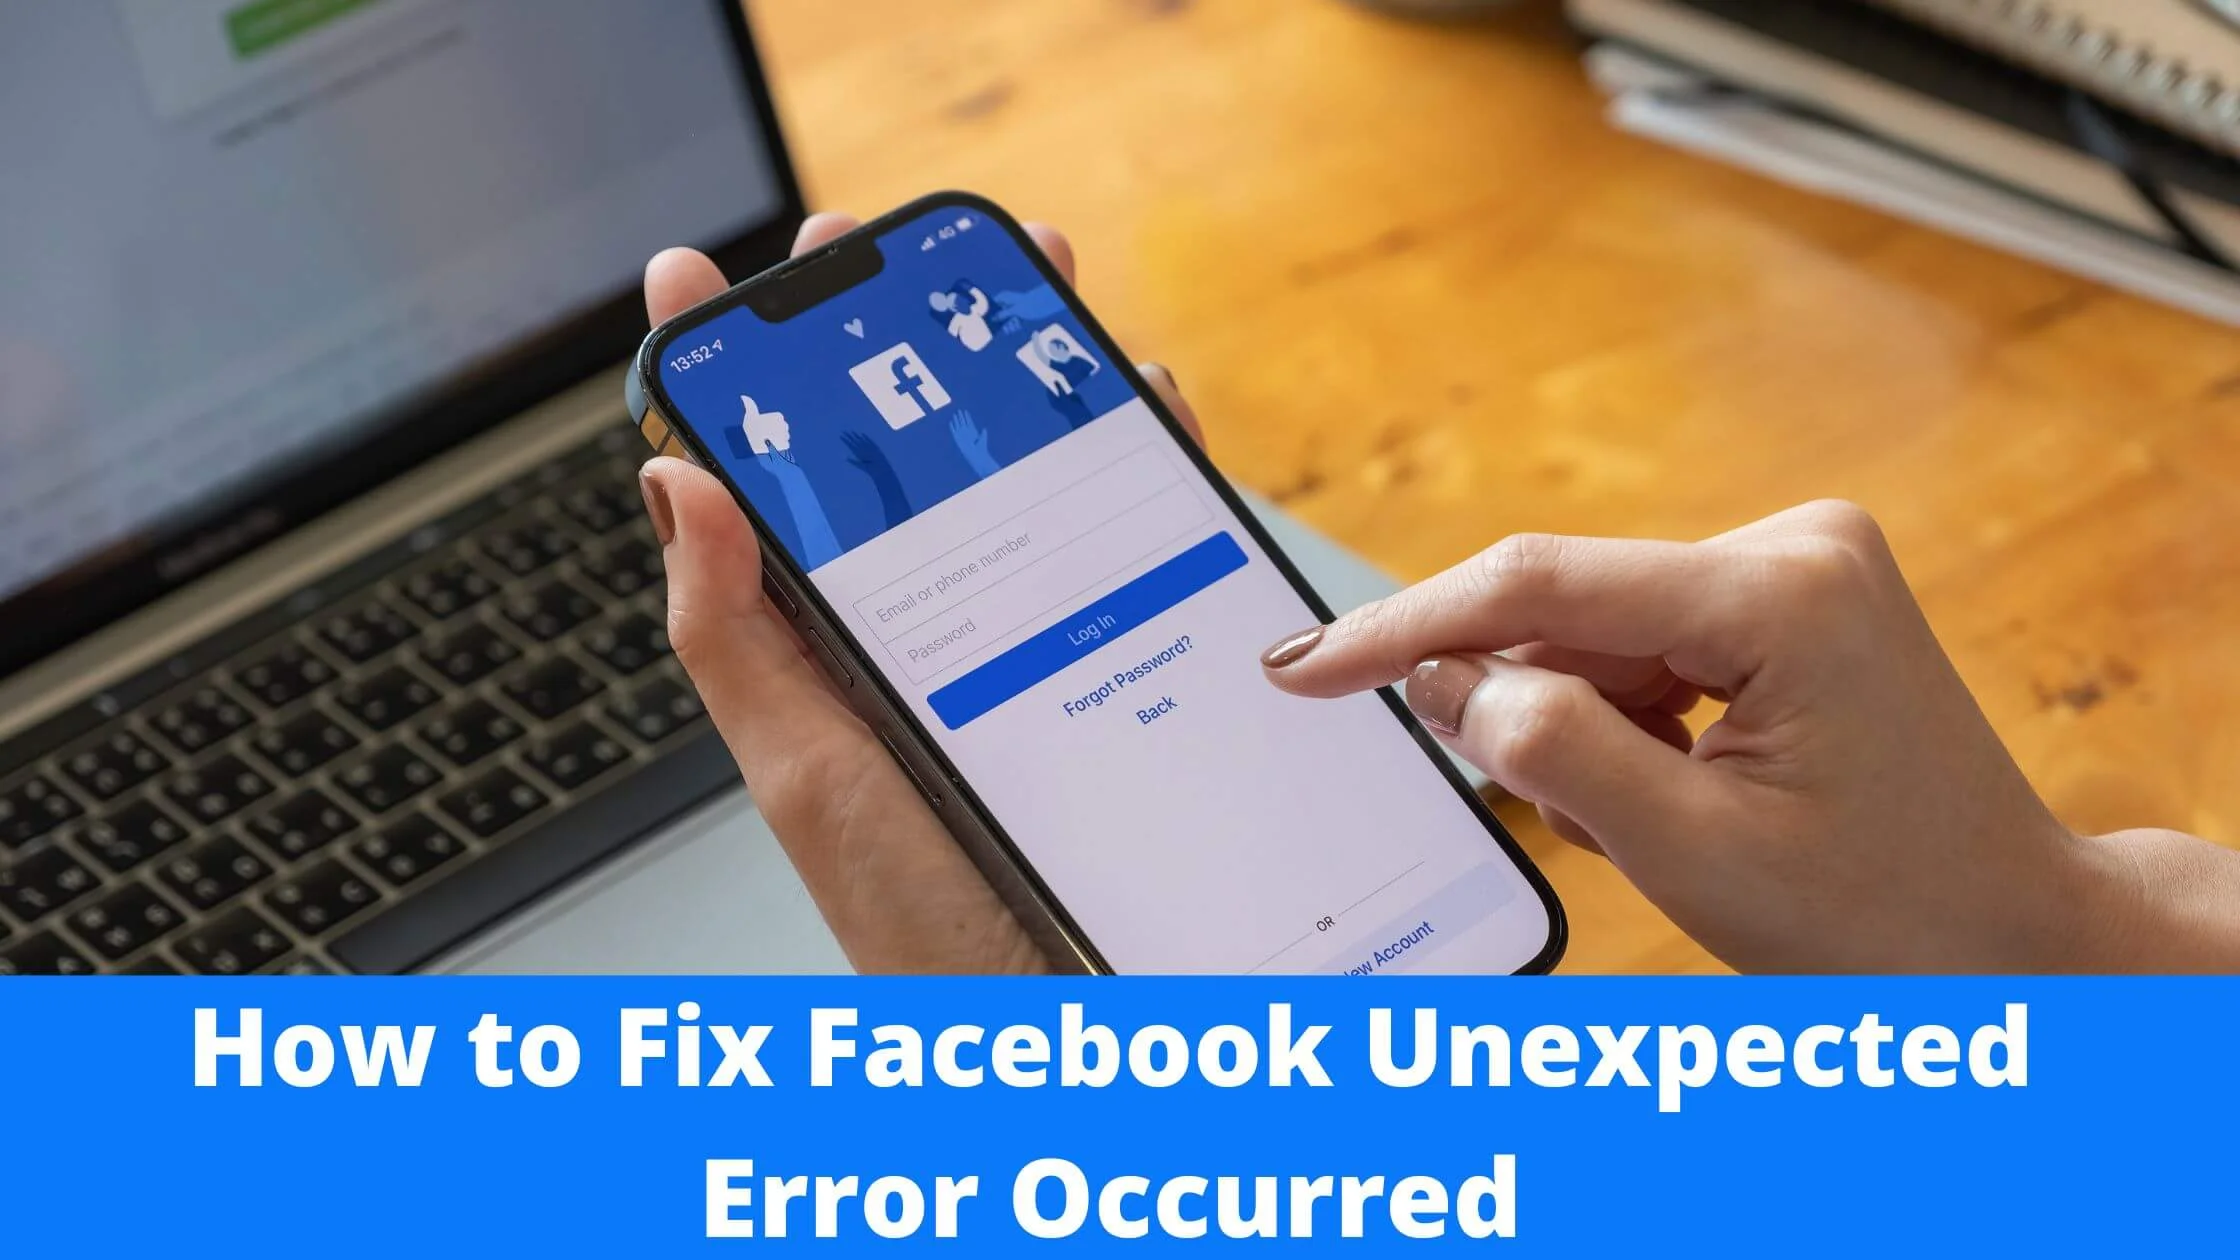 Facebook Unexpected Error Occurred